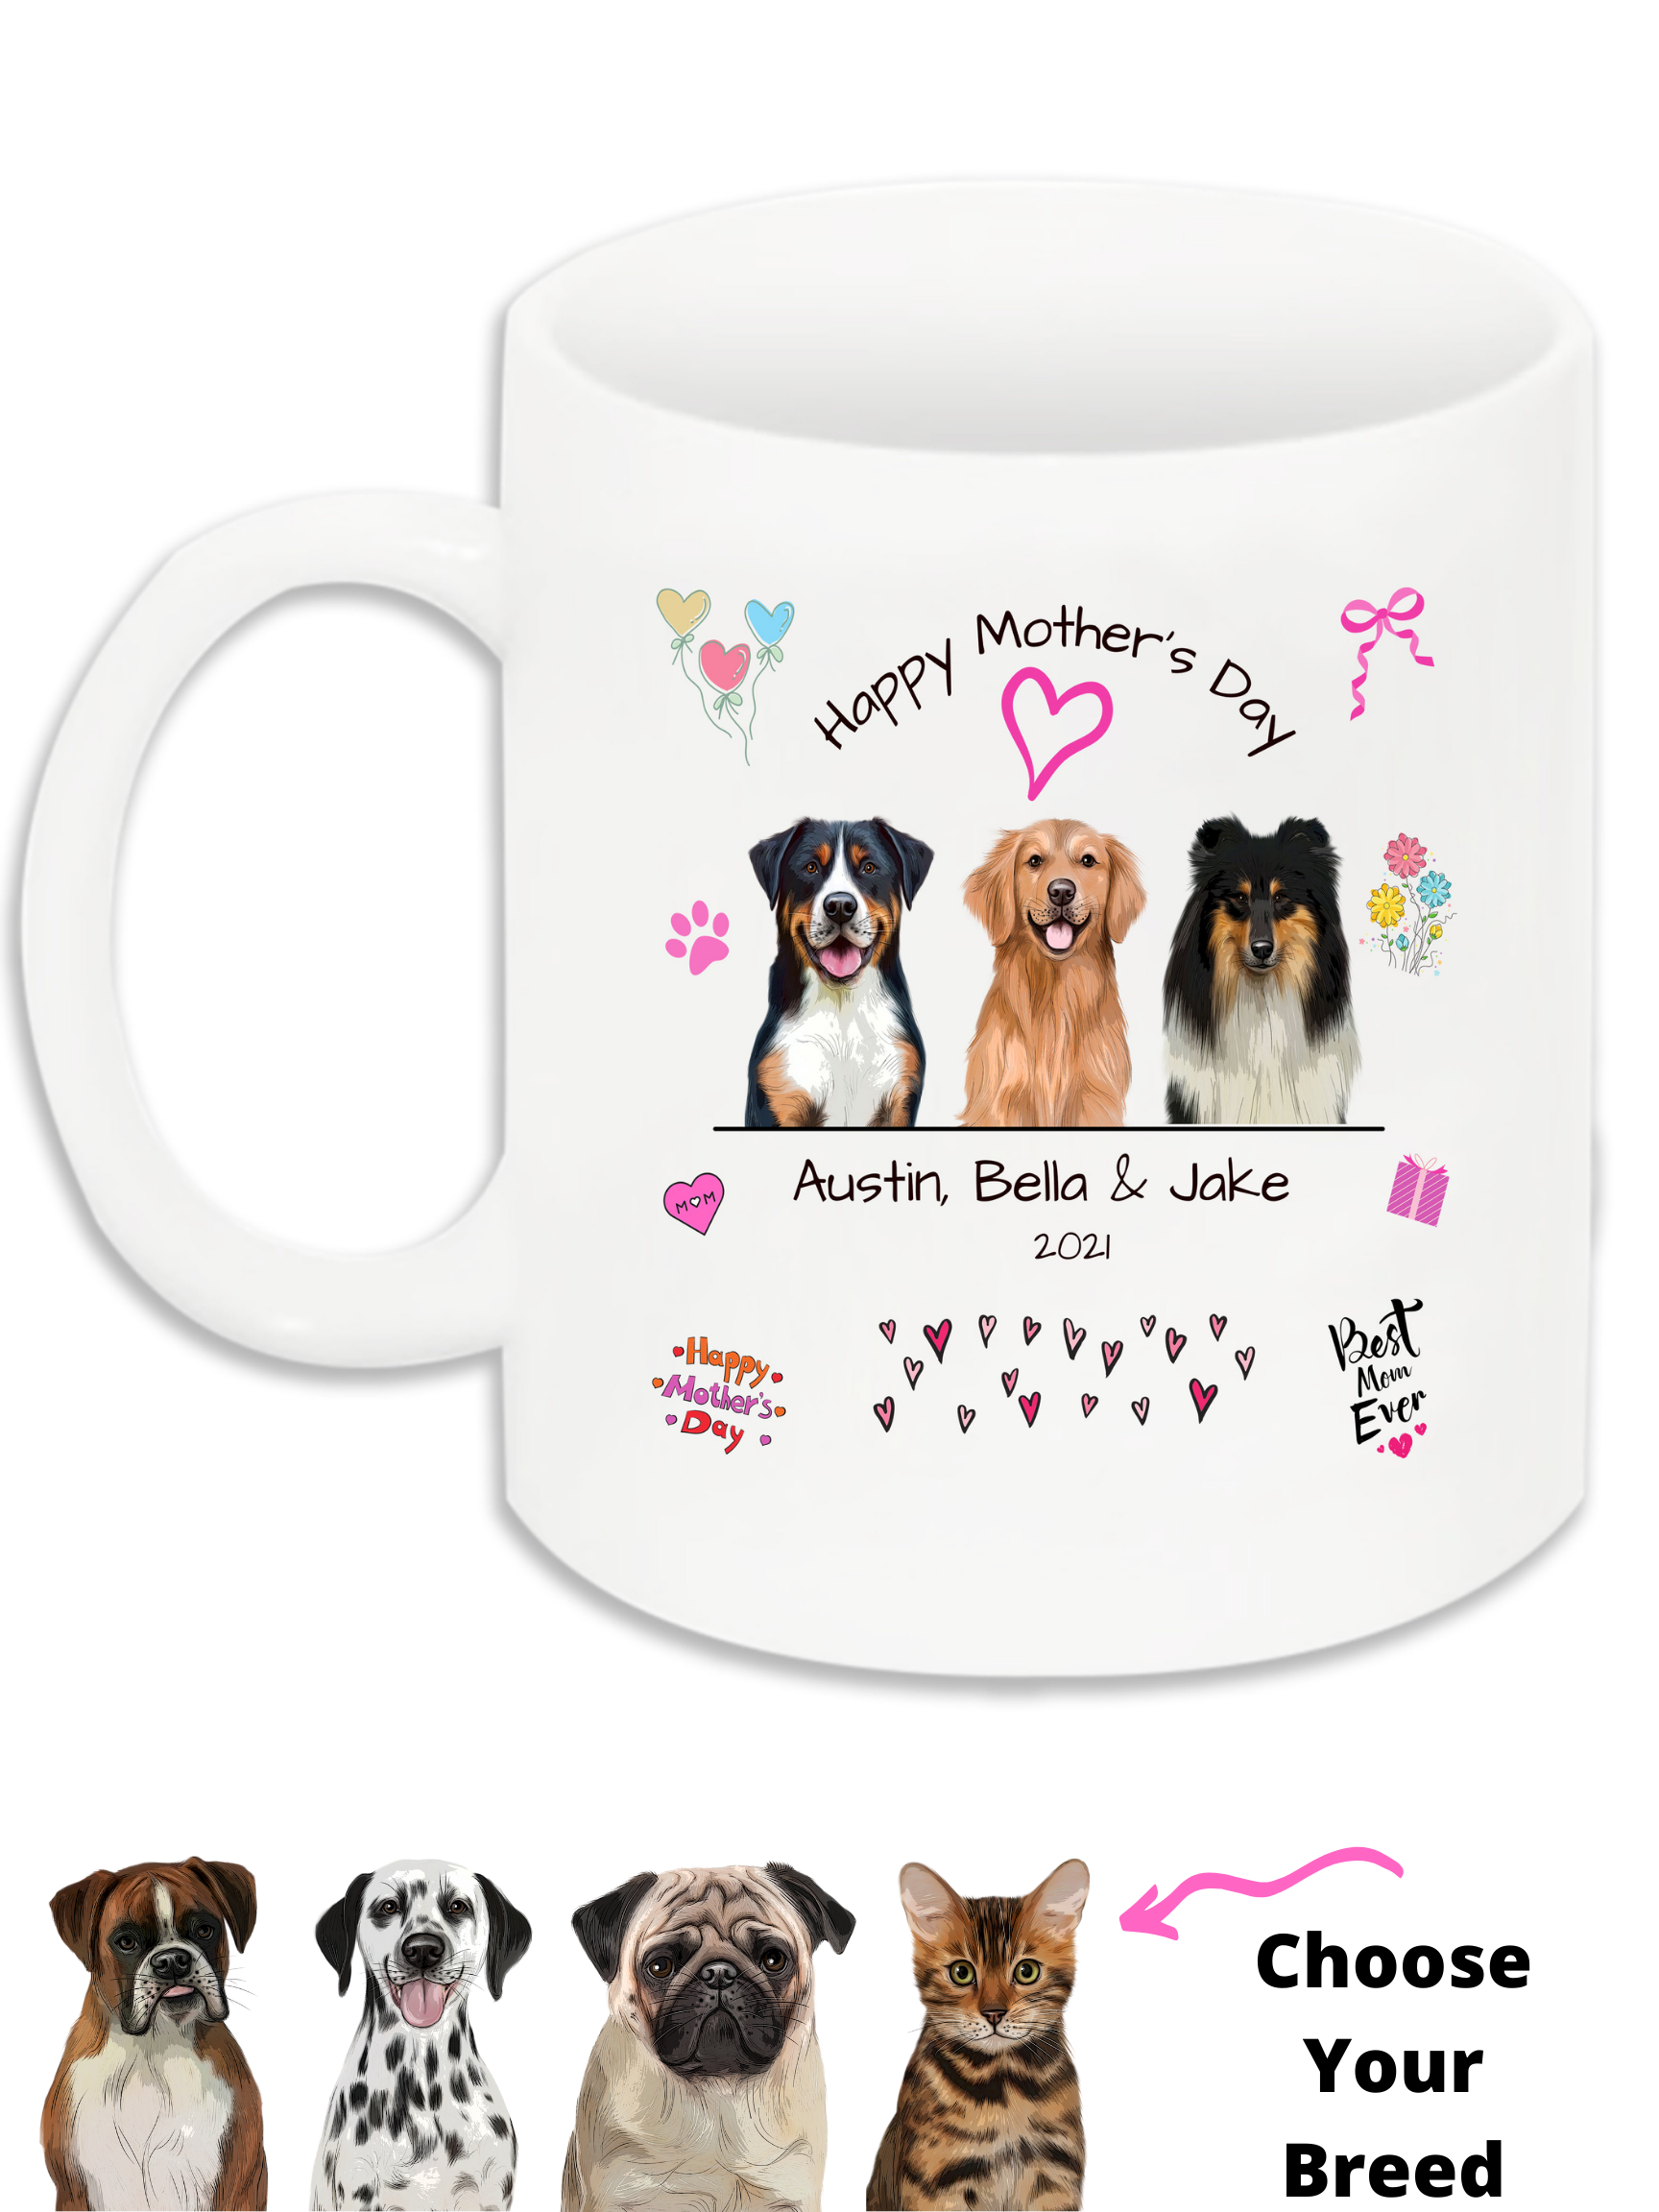 Best Dog Mom Ever Mother's Day Gift Mug 11oz 